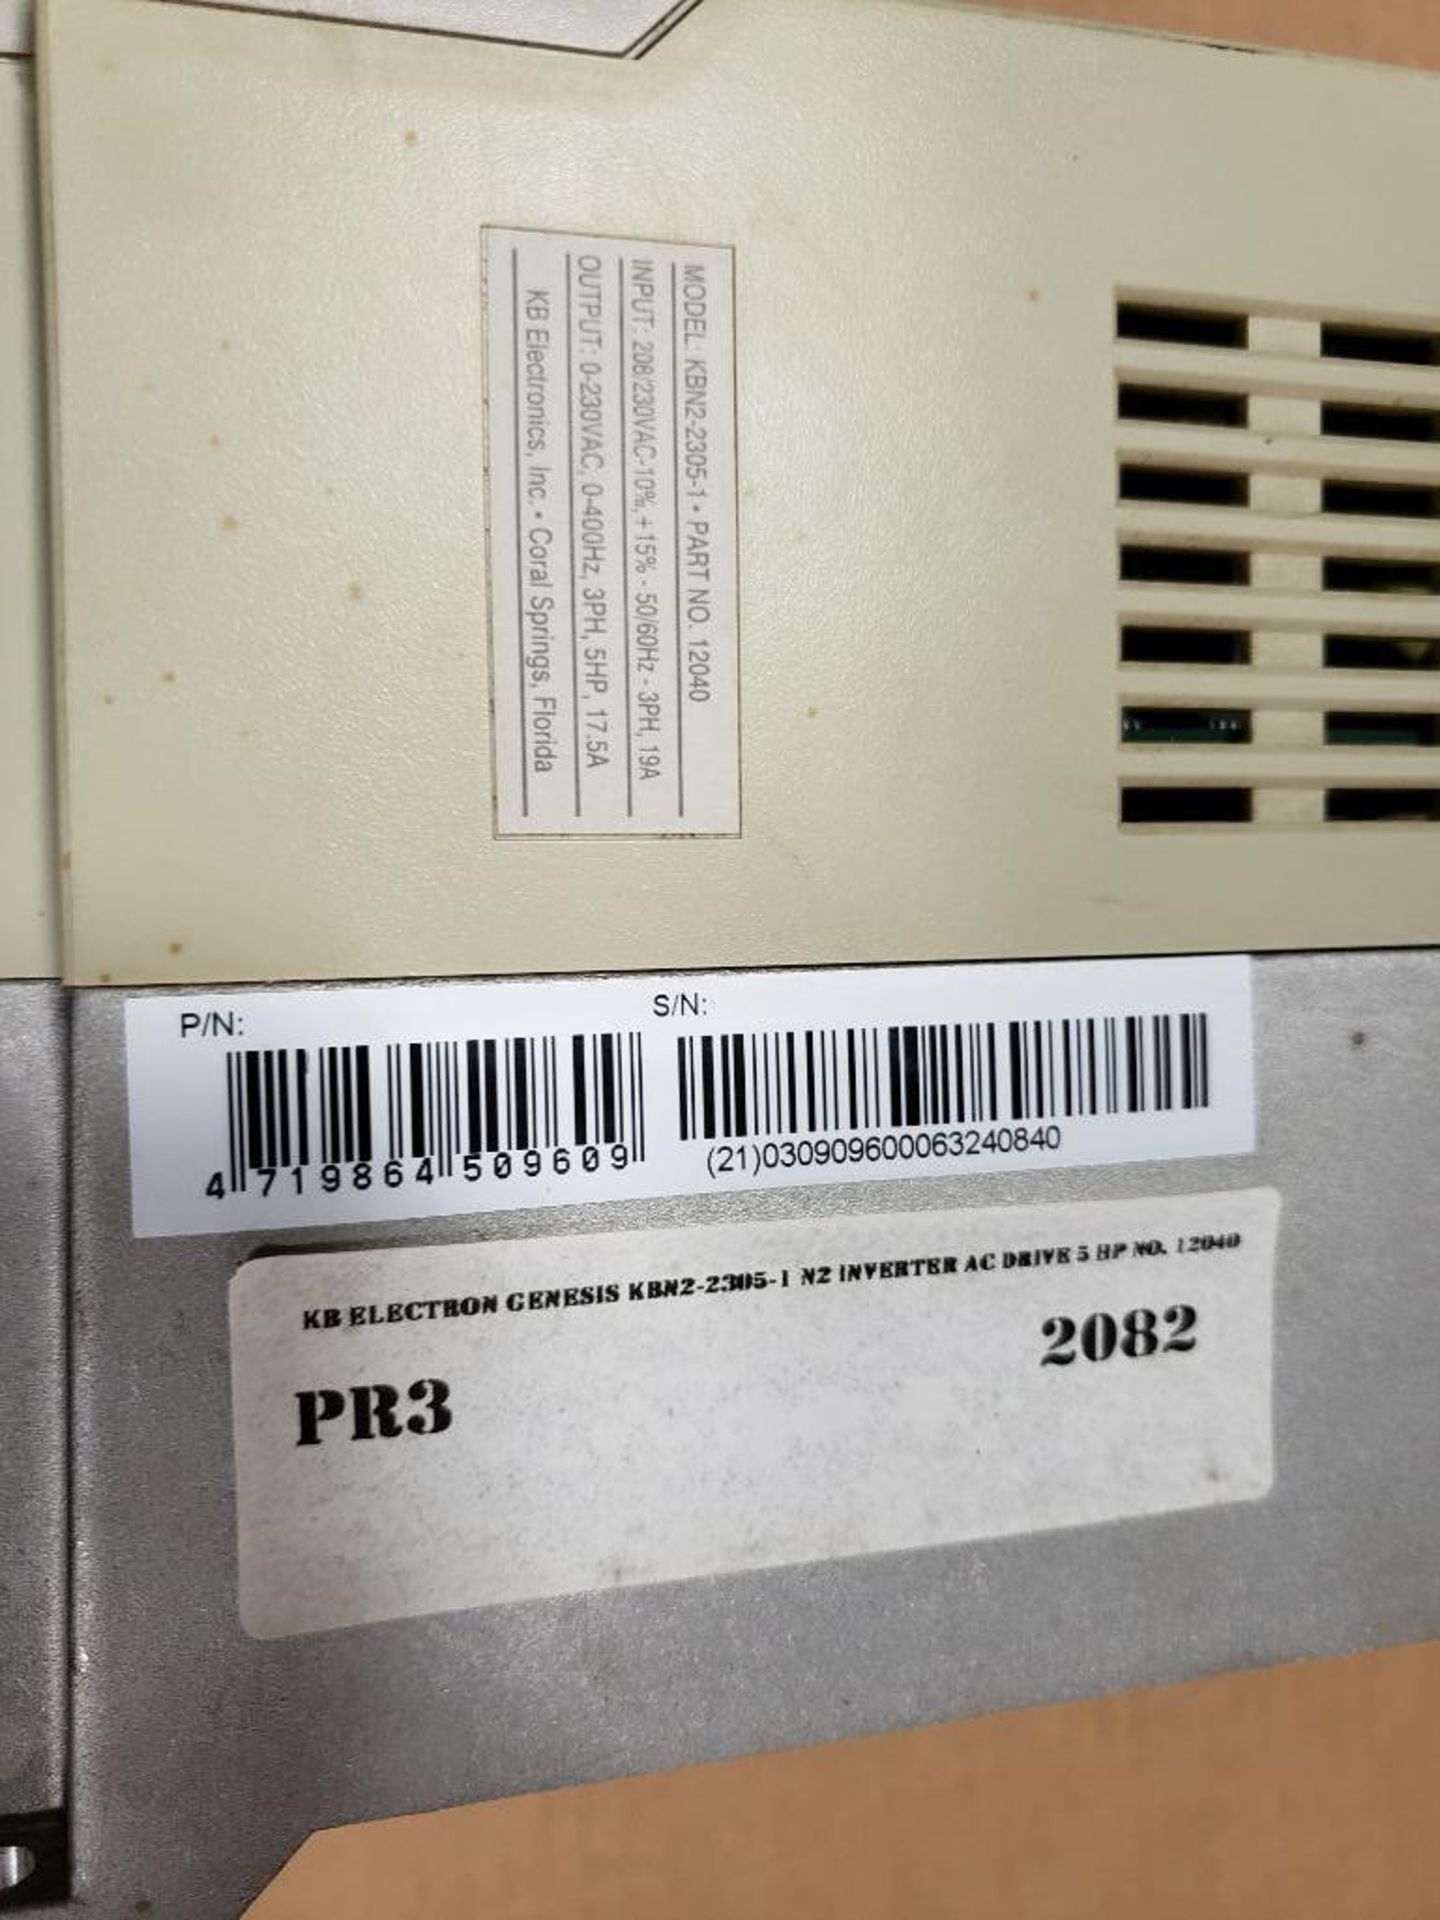 Genesis N2 AC Inverter drive. Model: KBM2-2305-1 P/N: 12040. 5HP output. - Image 7 of 7